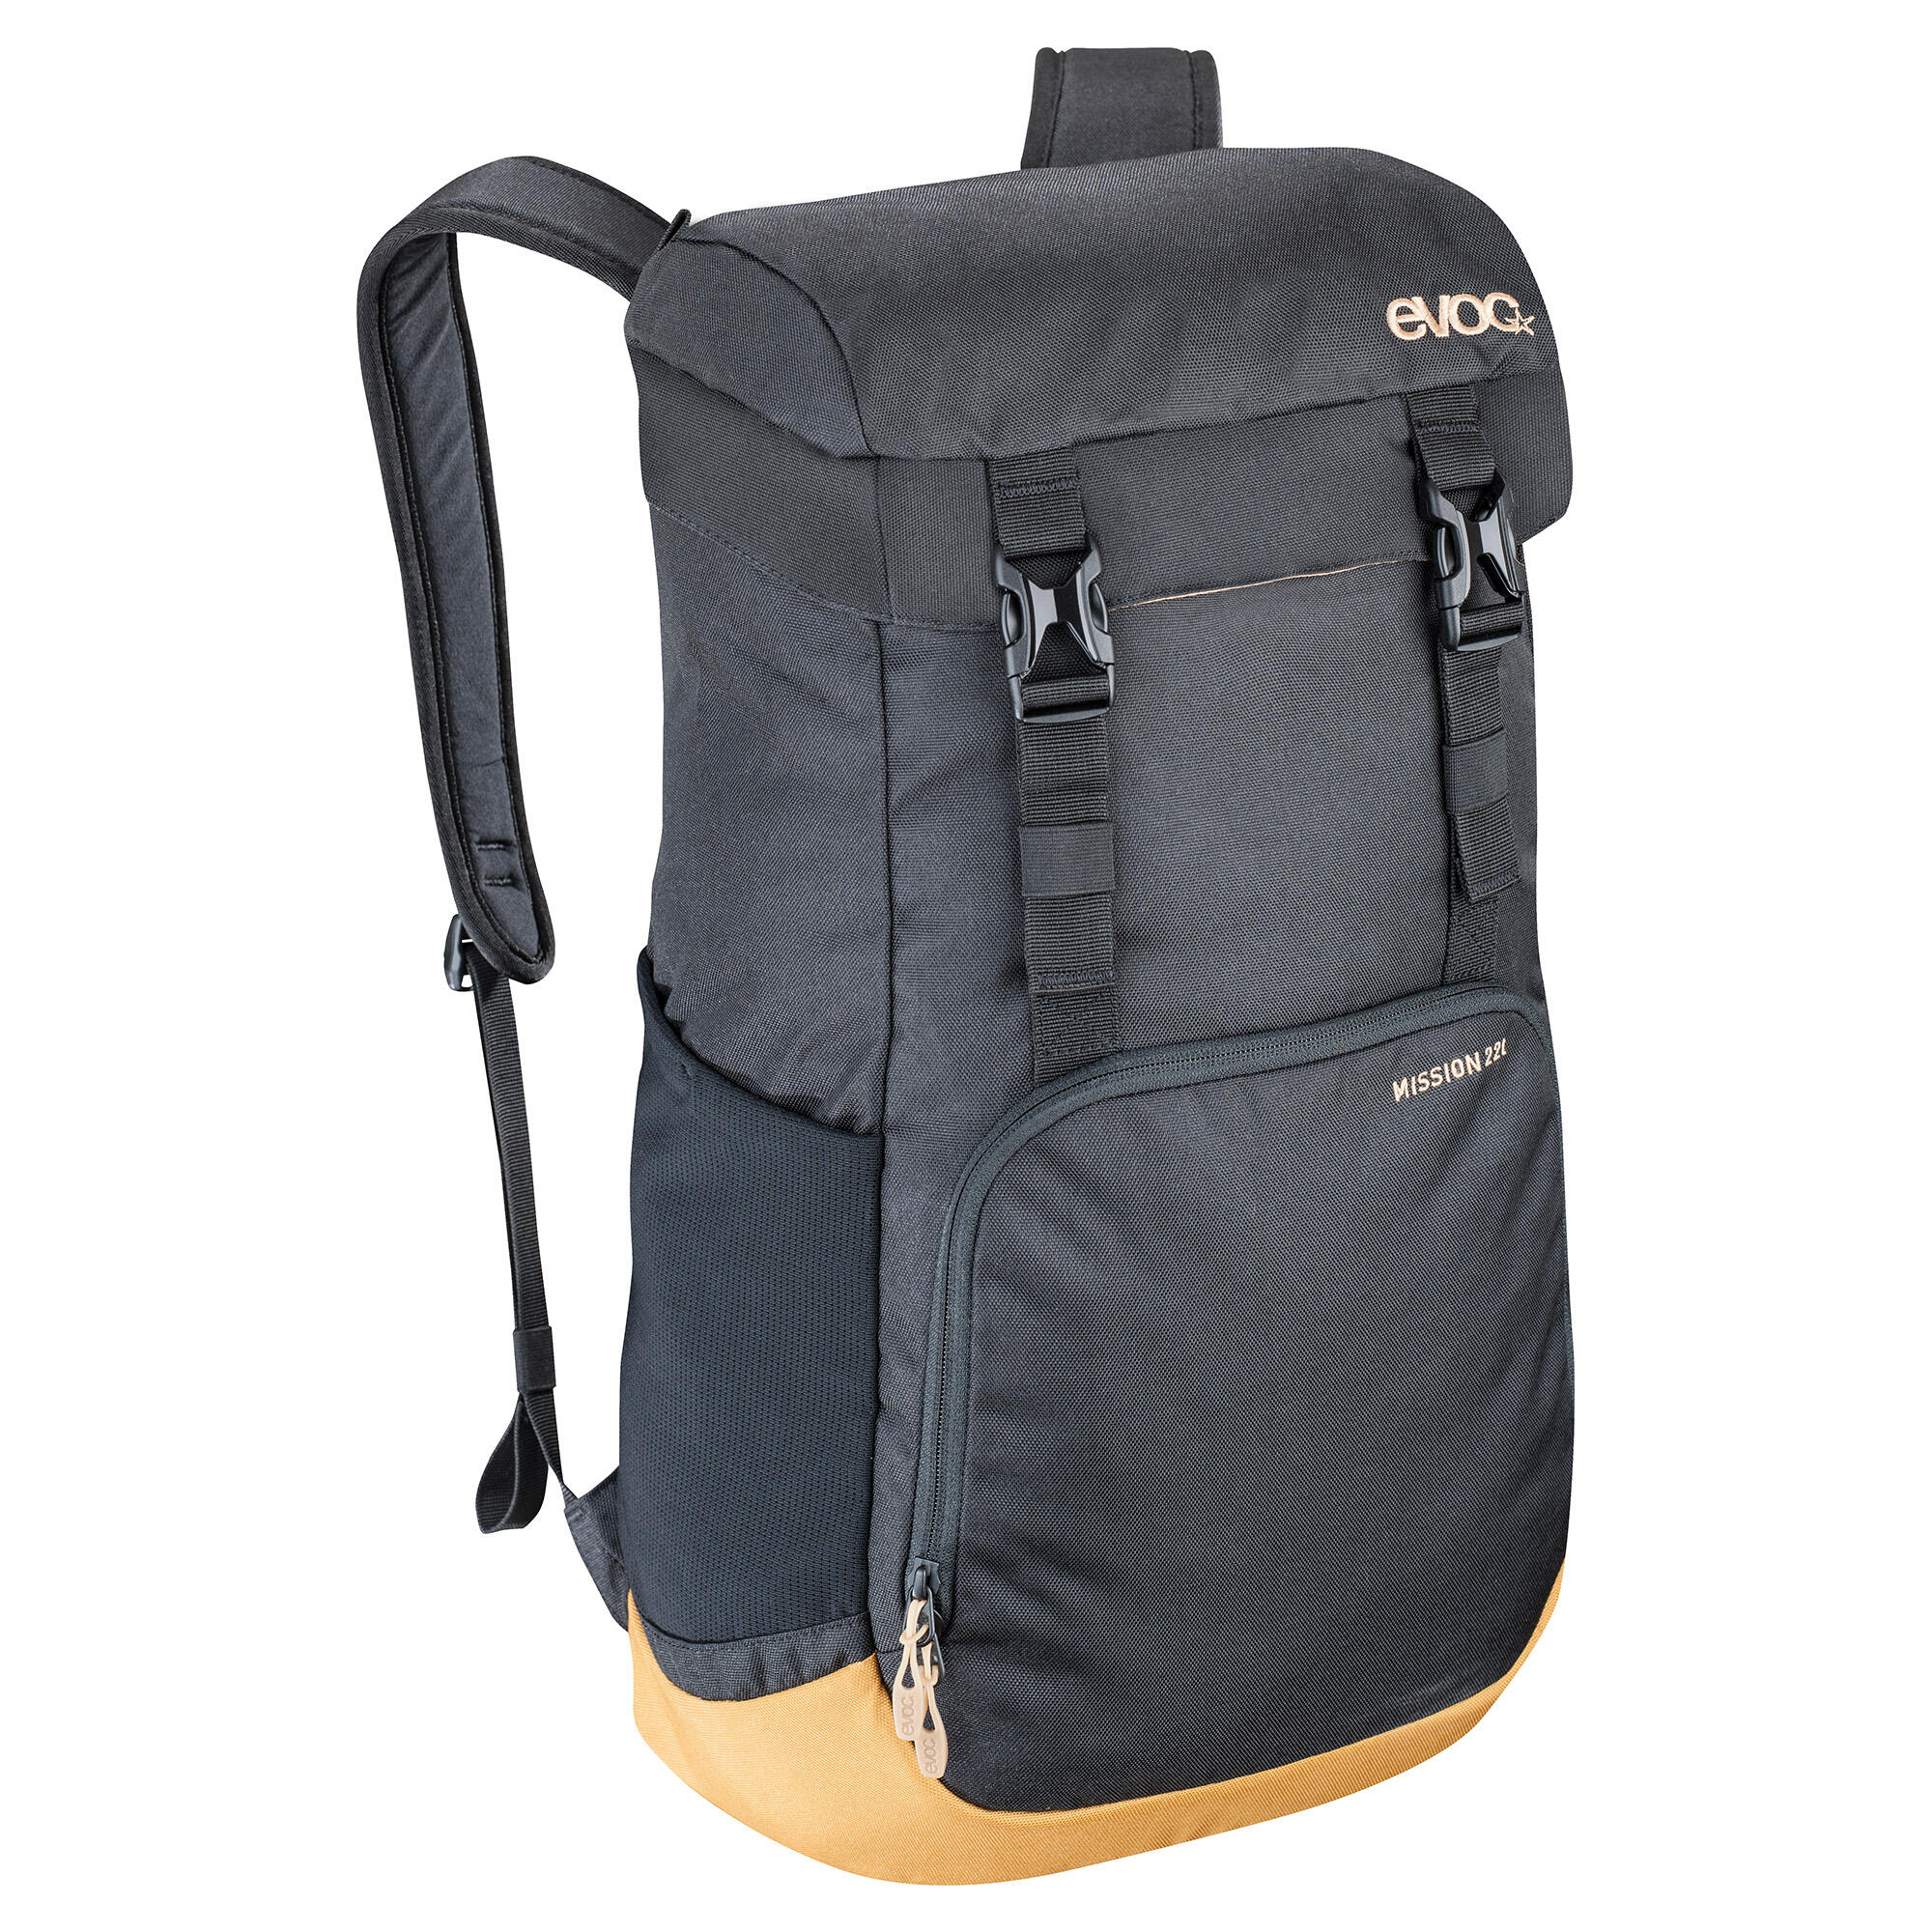 EVOC EVOC Mission Backpack